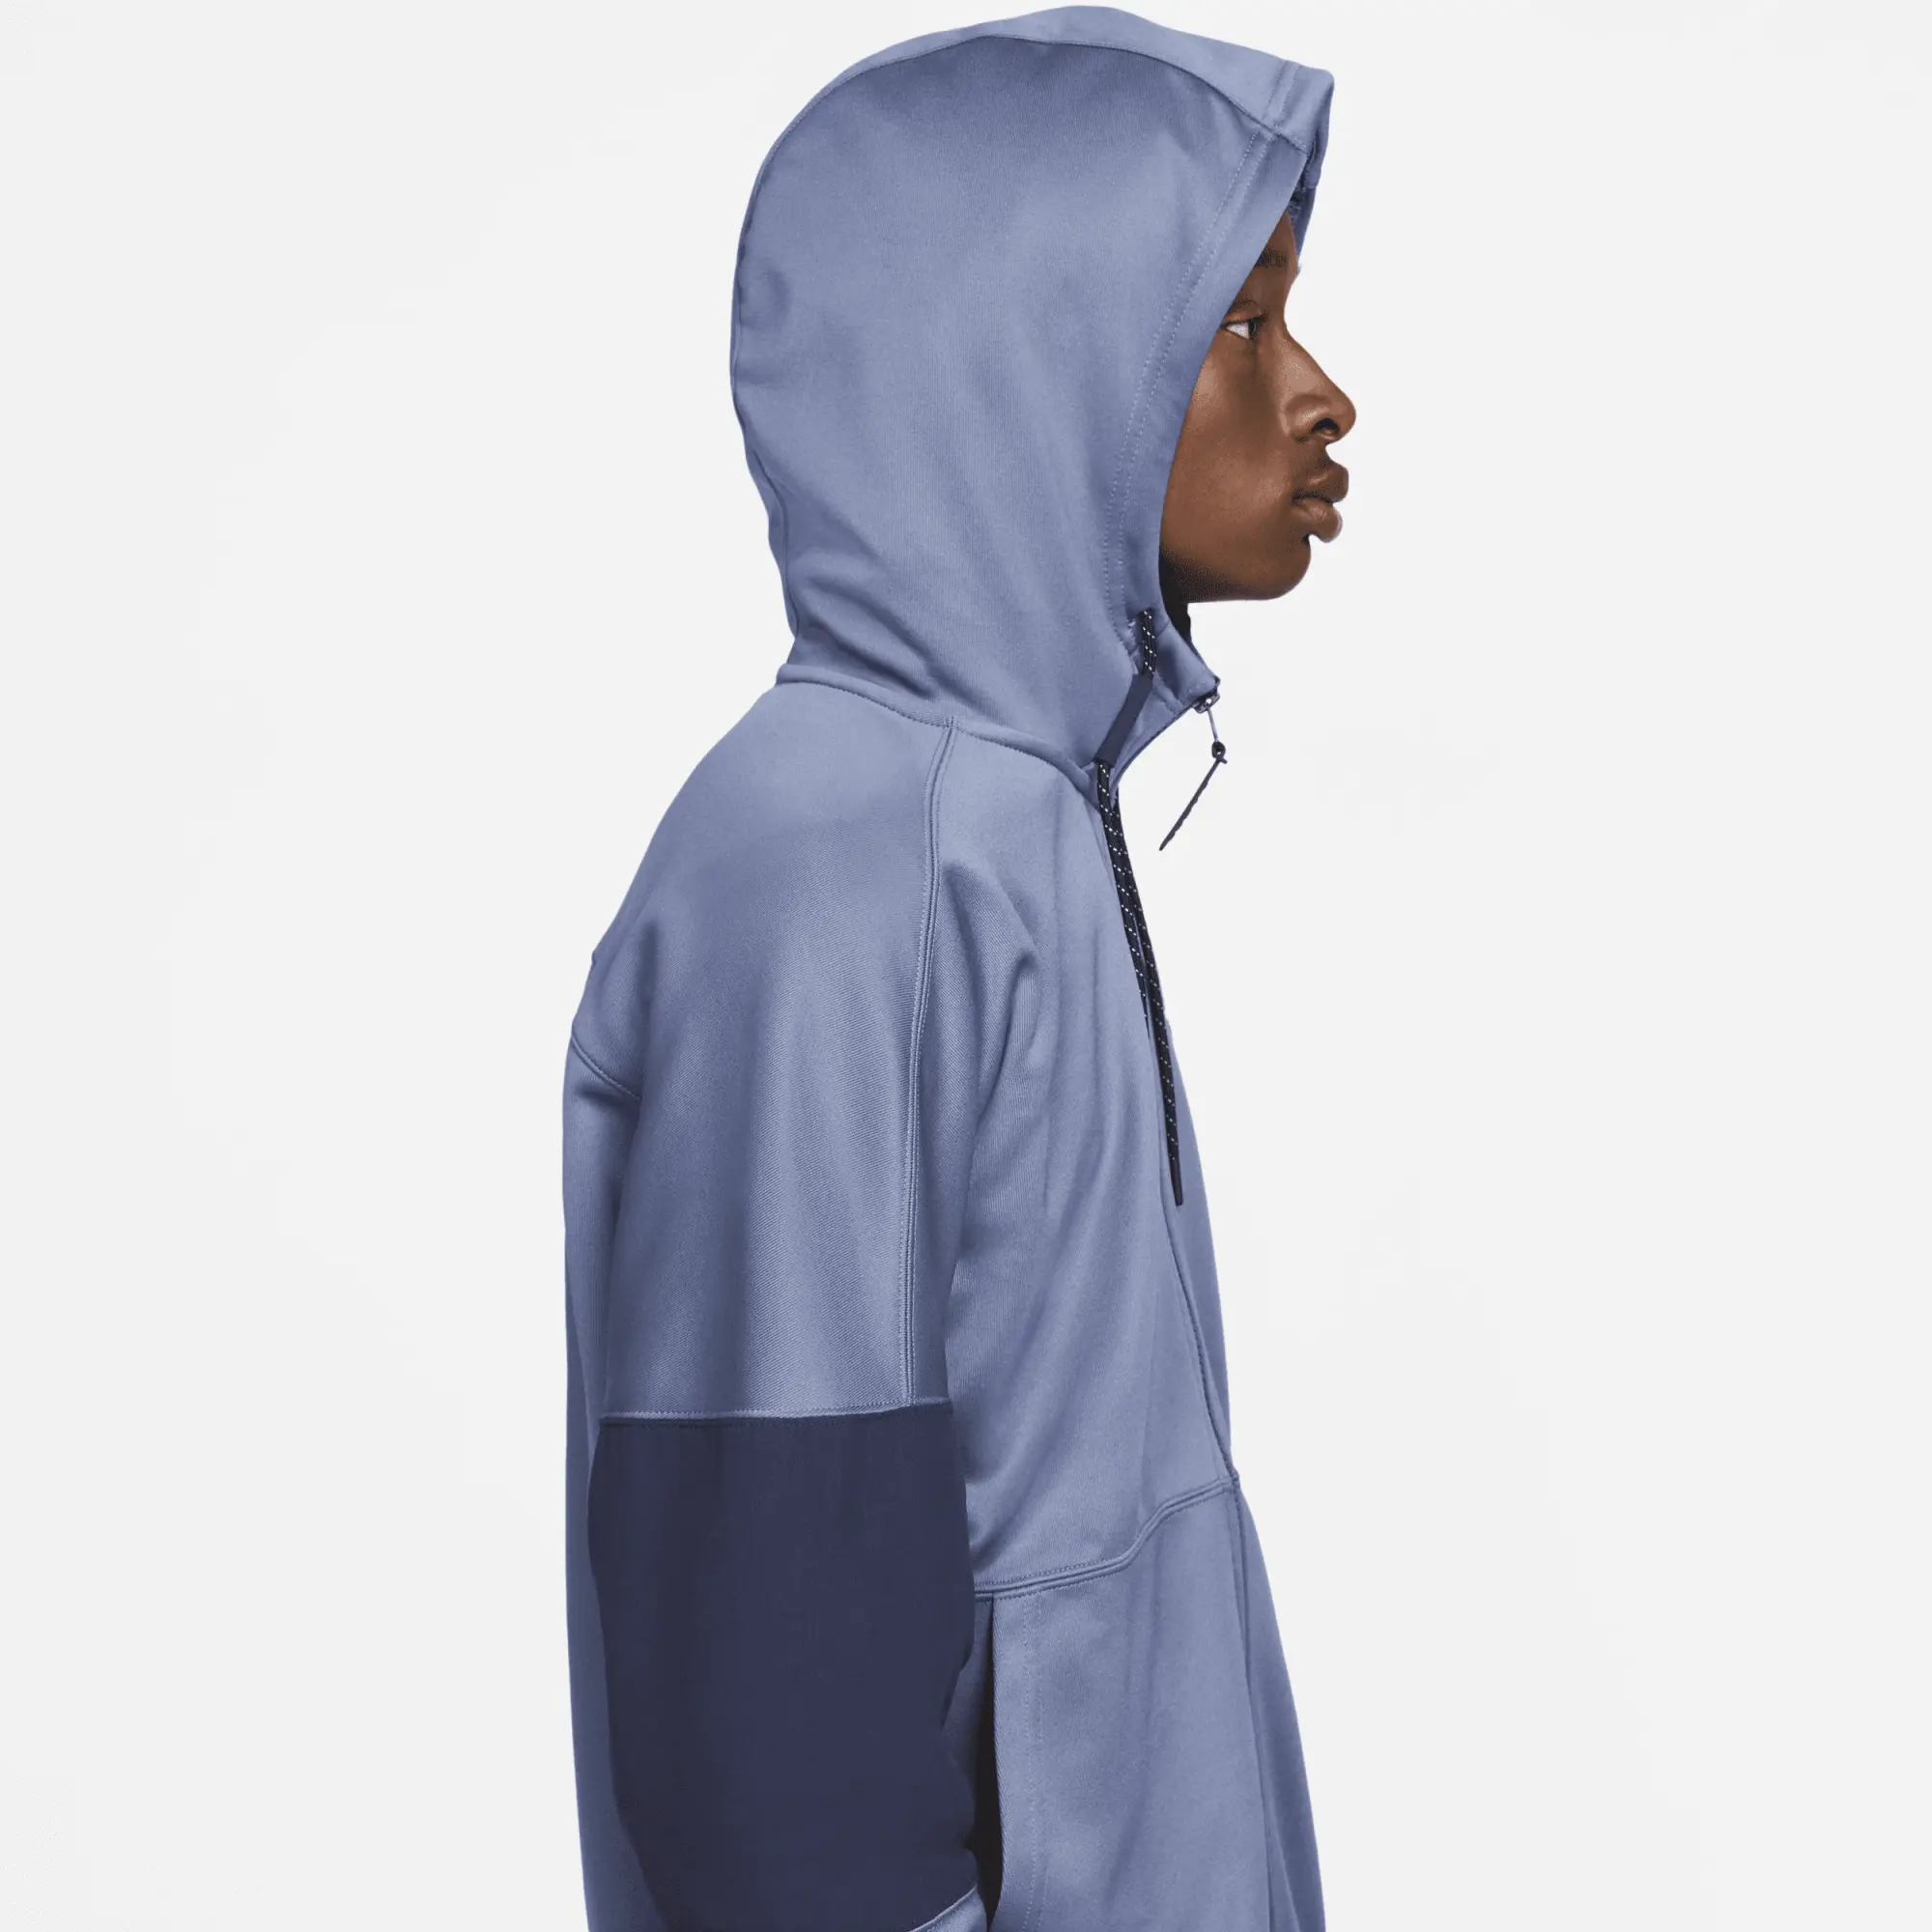 Nike Sportswear Air Max Men's Full-Zip Hoodie - Blue | FB1435-491 ...